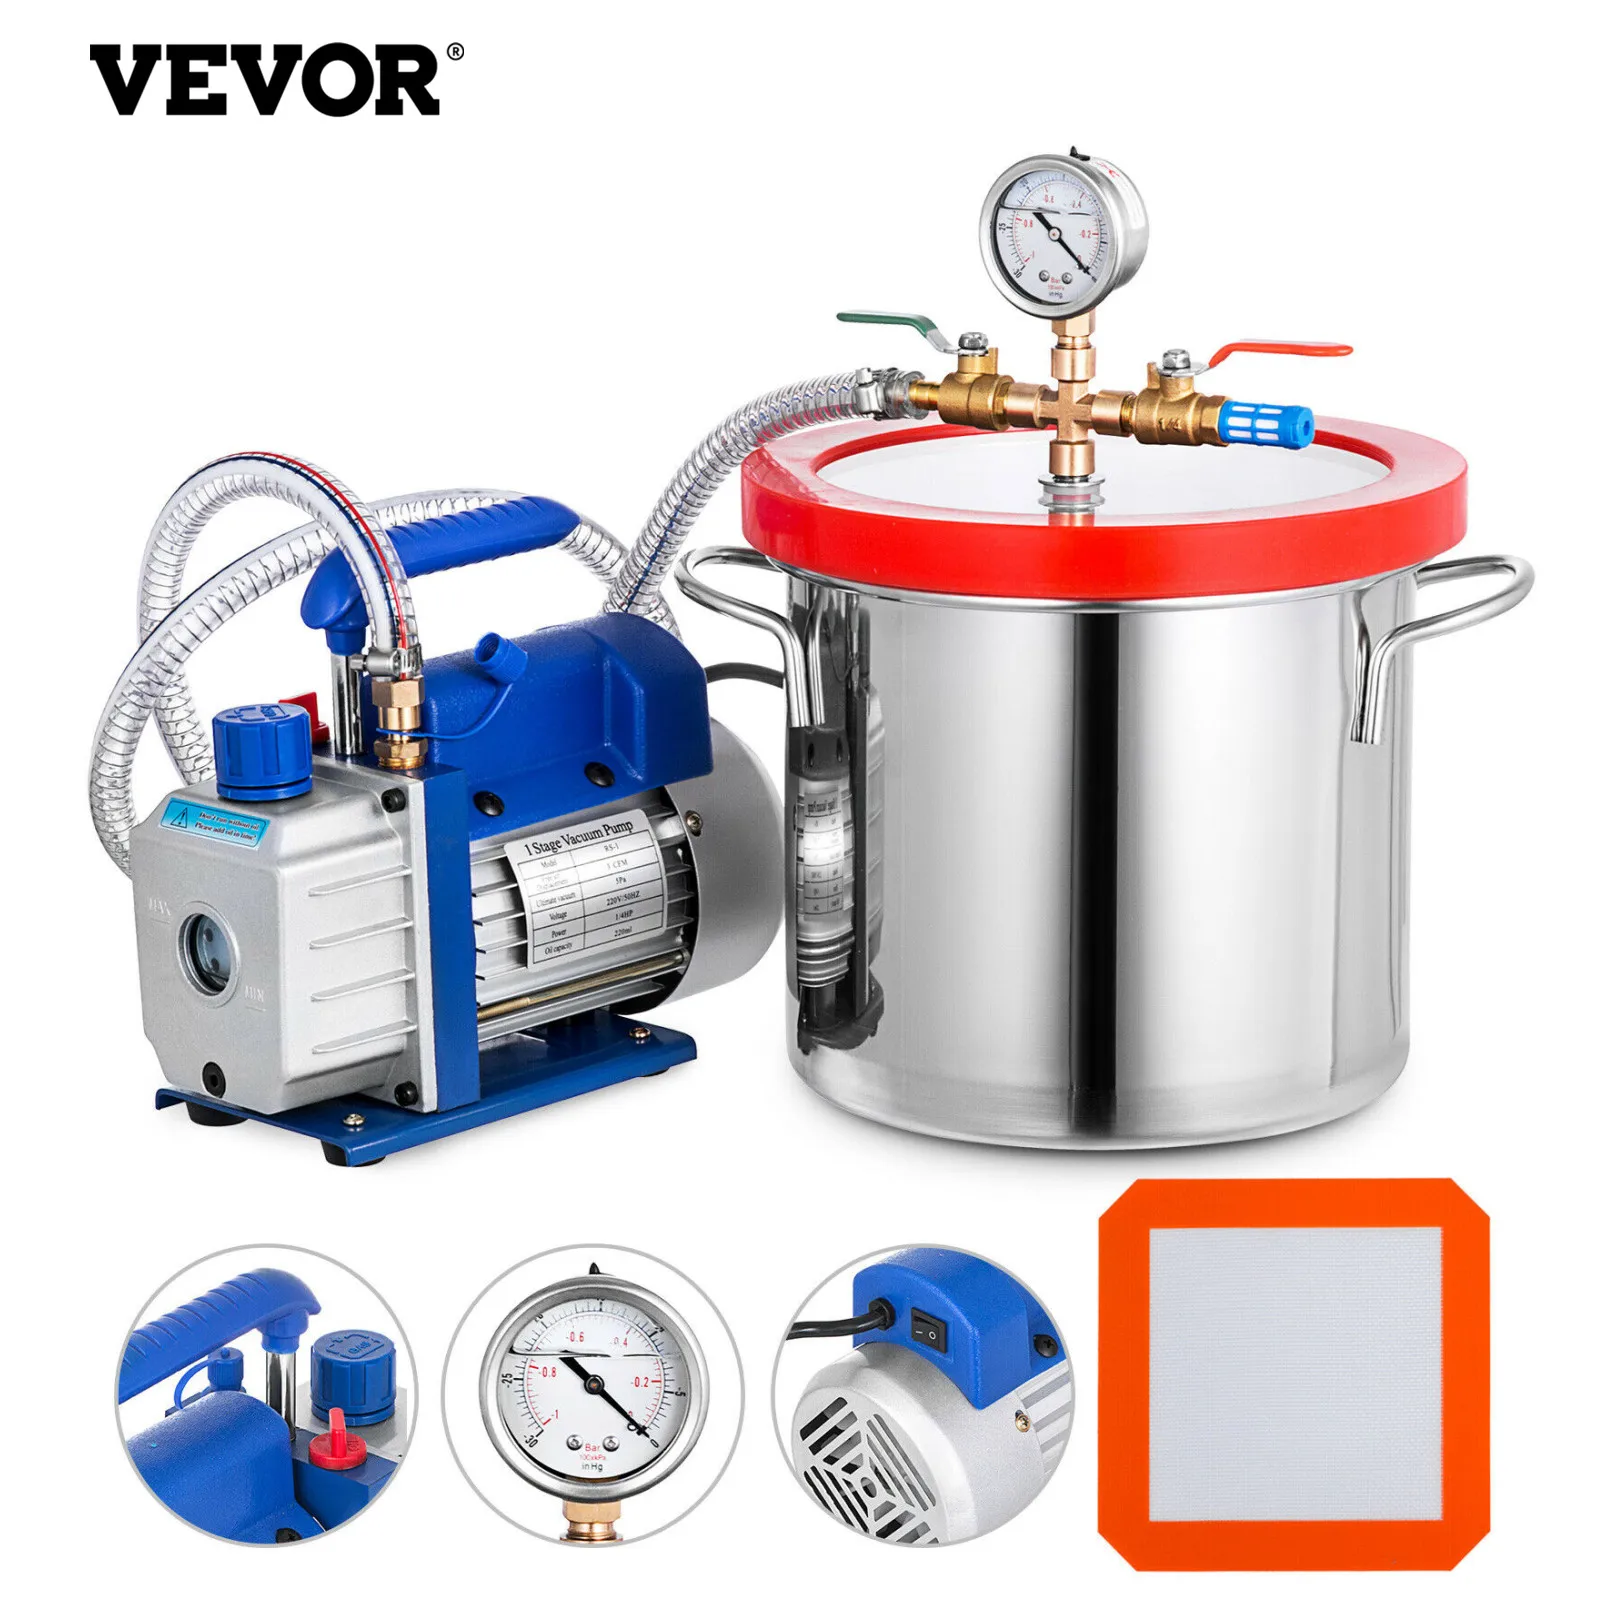 VEVOR-Kit de cámara de 2 galones, bomba de vacío 3CFM, medidor de desgasificación controlado de 1/4HP para refrigerante de aire acondicionado doméstico